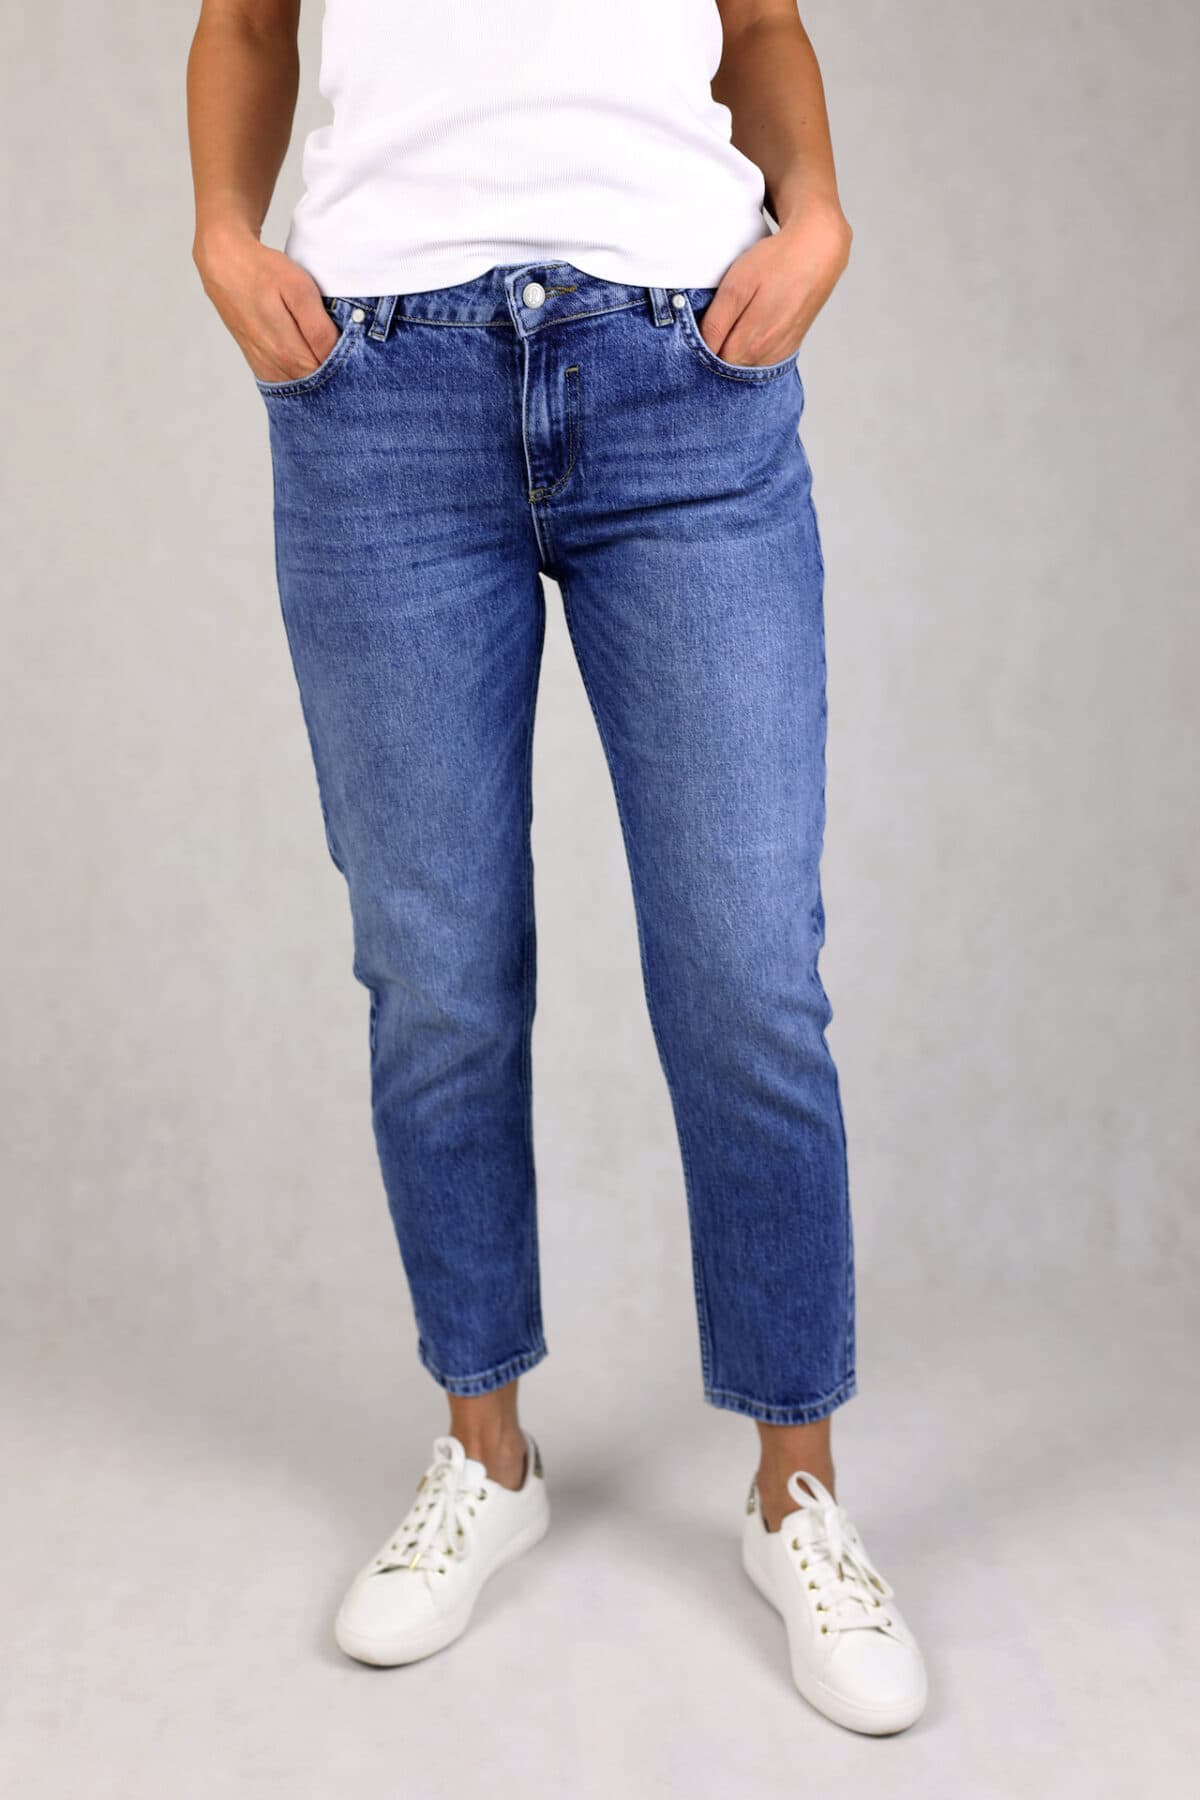 Niebieski jeansy z wysokim stanem w kolorze niebieskim, efekt prania, pięć kieszeni, zapinane na suwak.